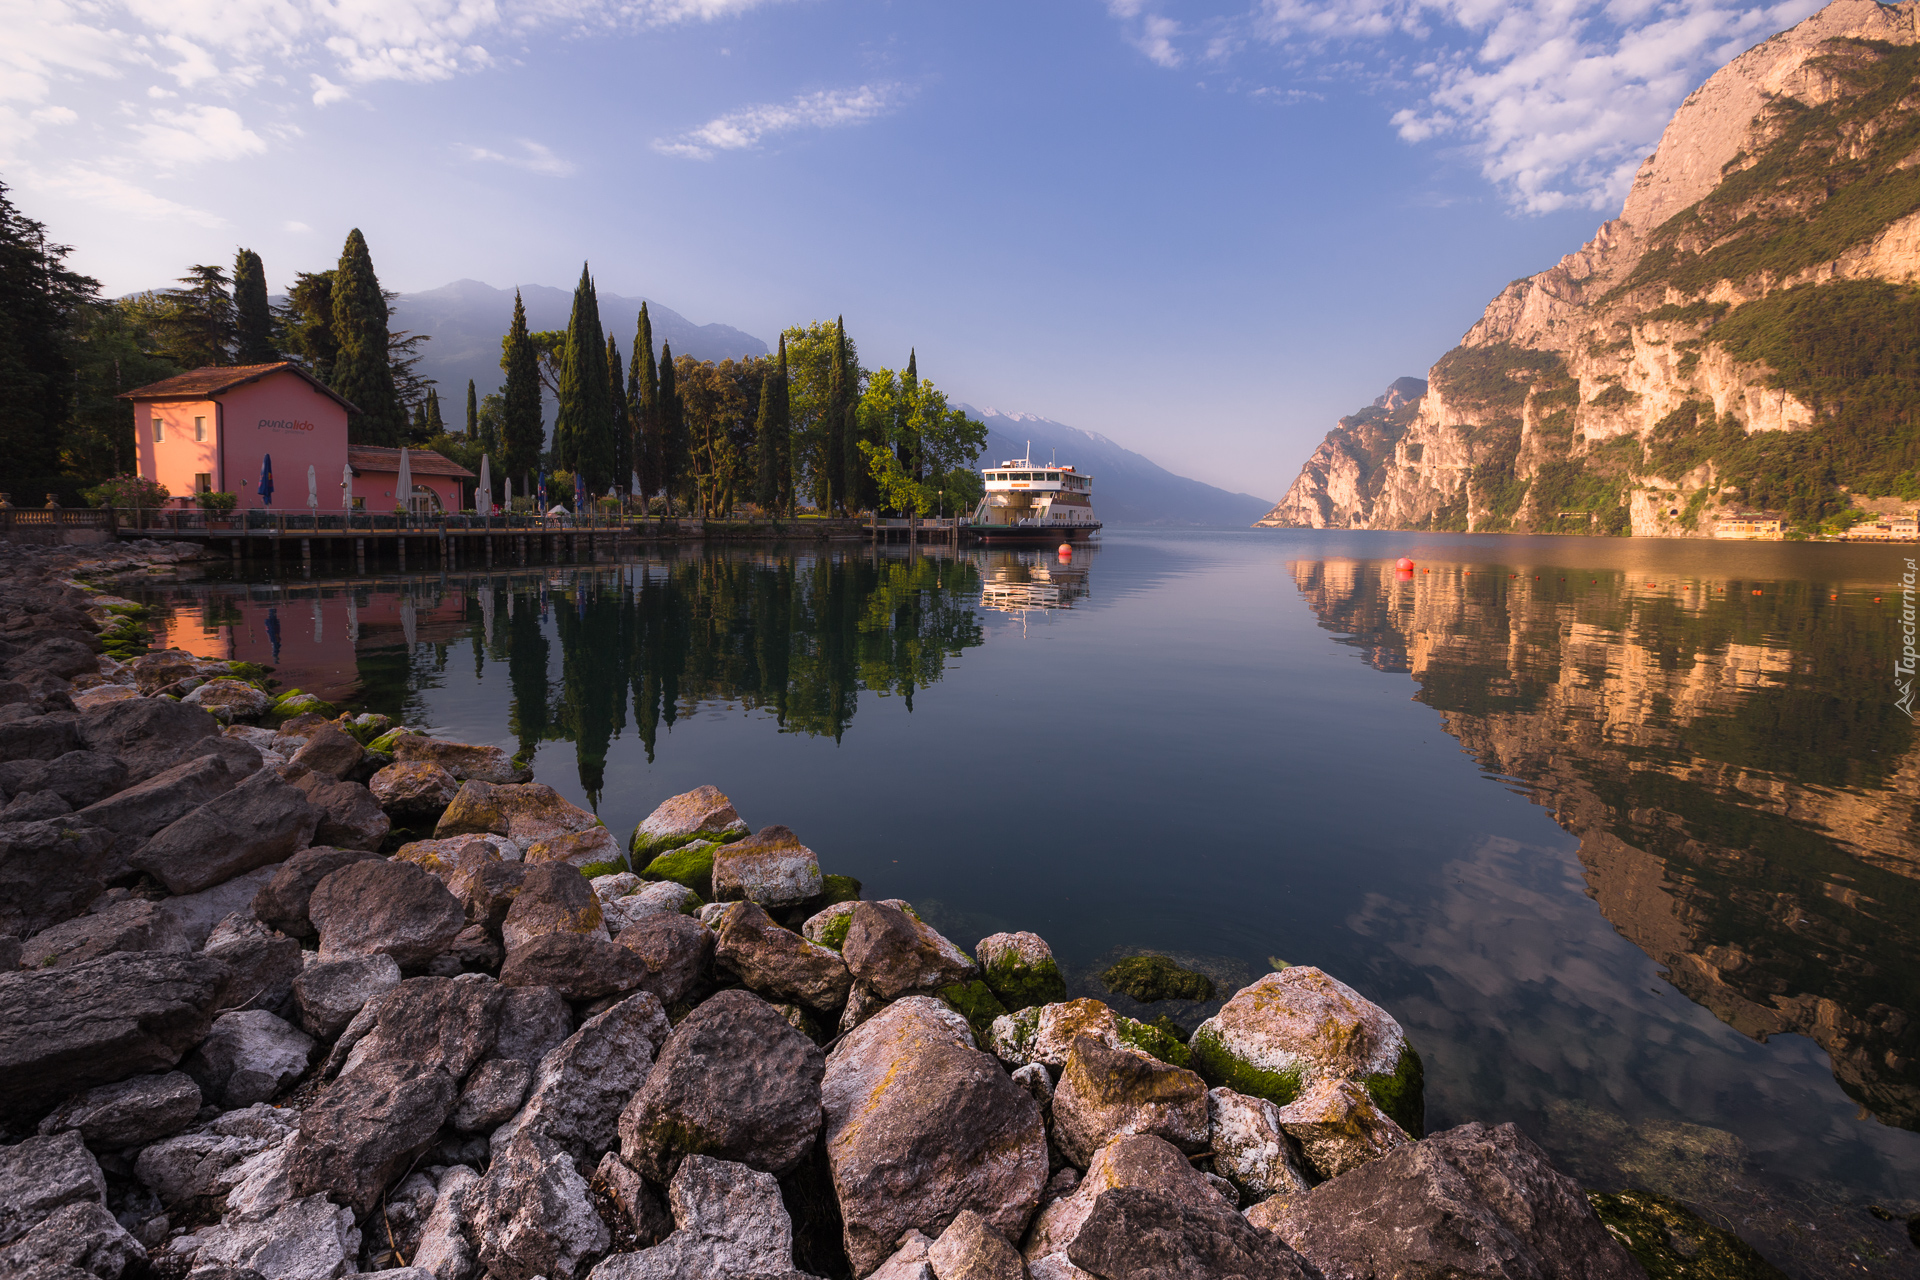 Jezioro Garda, Góry, Dom, Statek, Kamienie, Riva del Garda, Trento, Włochy